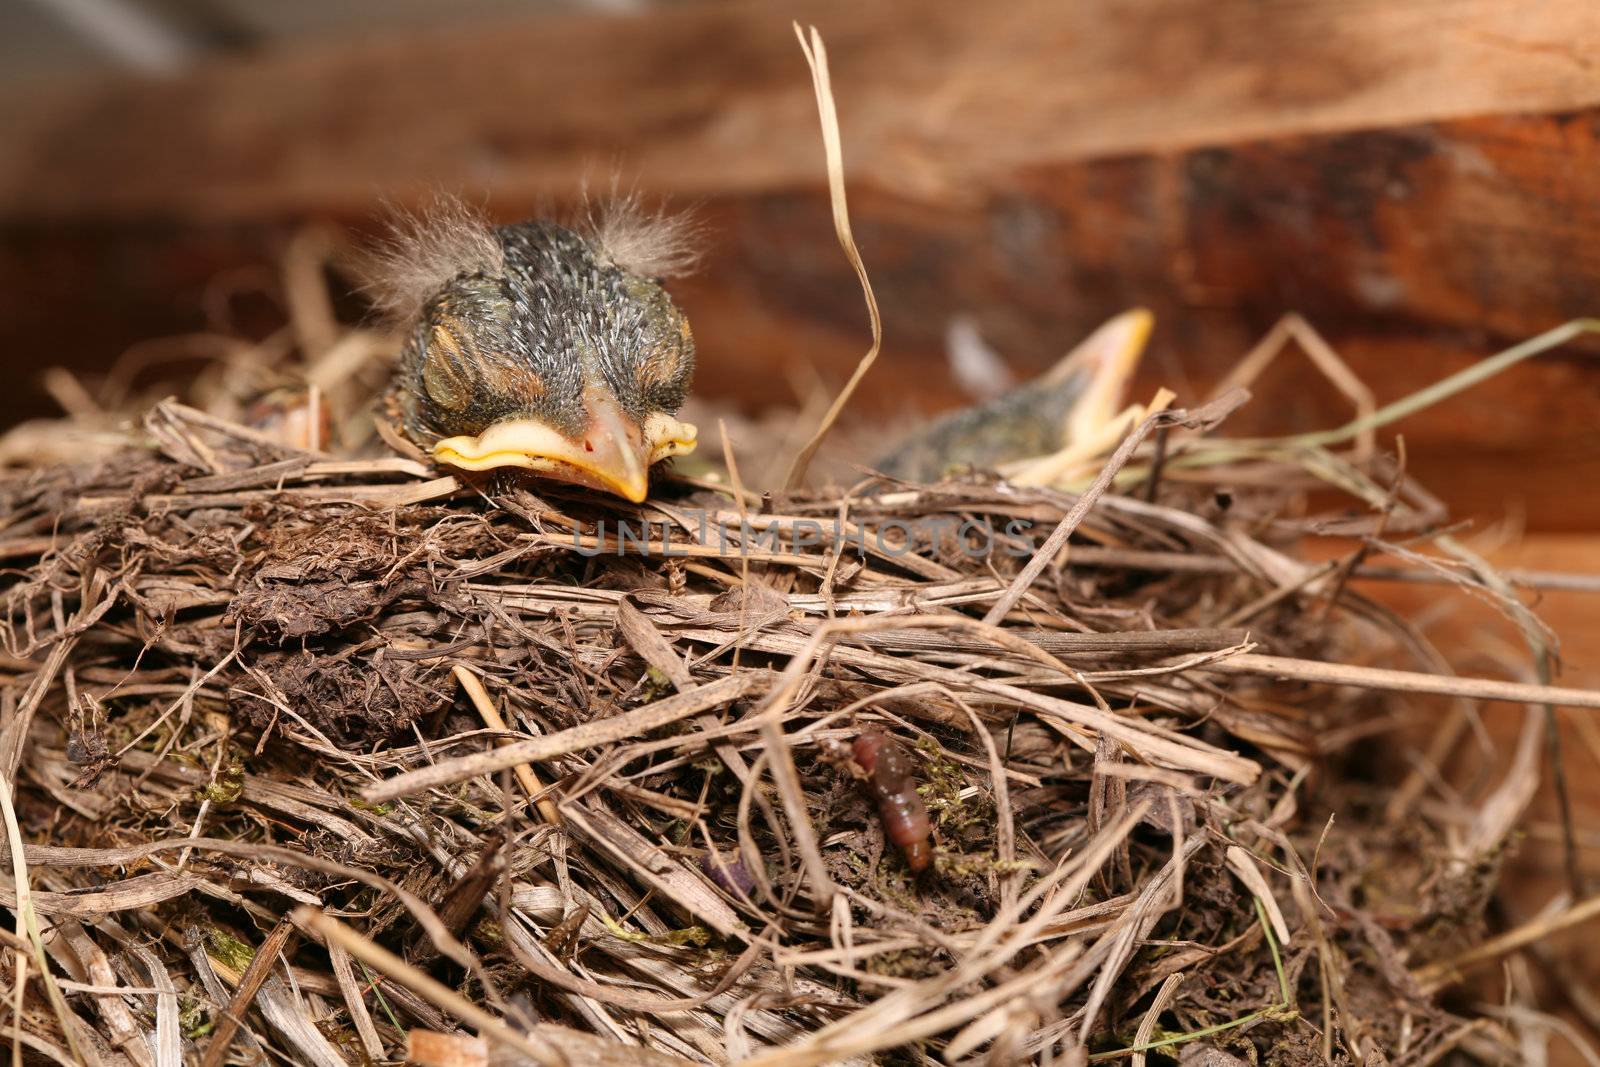 Baby bird resting in nest by jarenwicklund